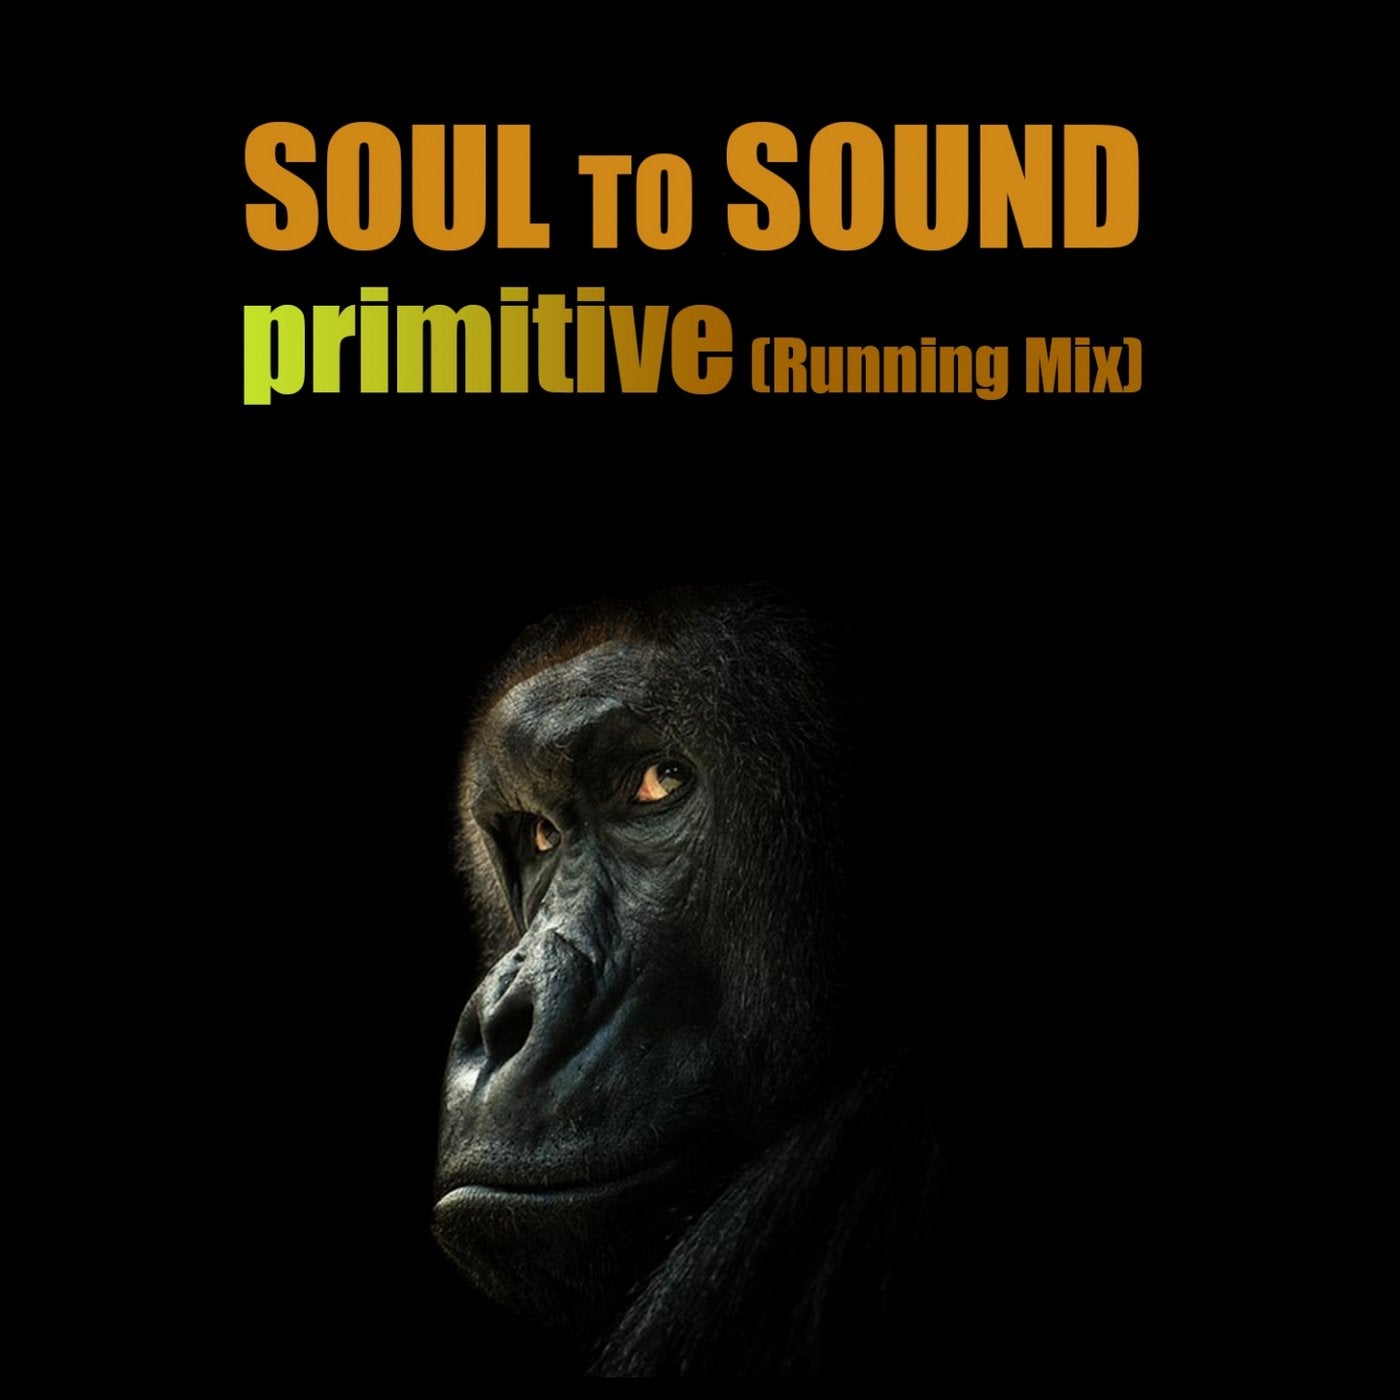 Primitive (Running Mix)